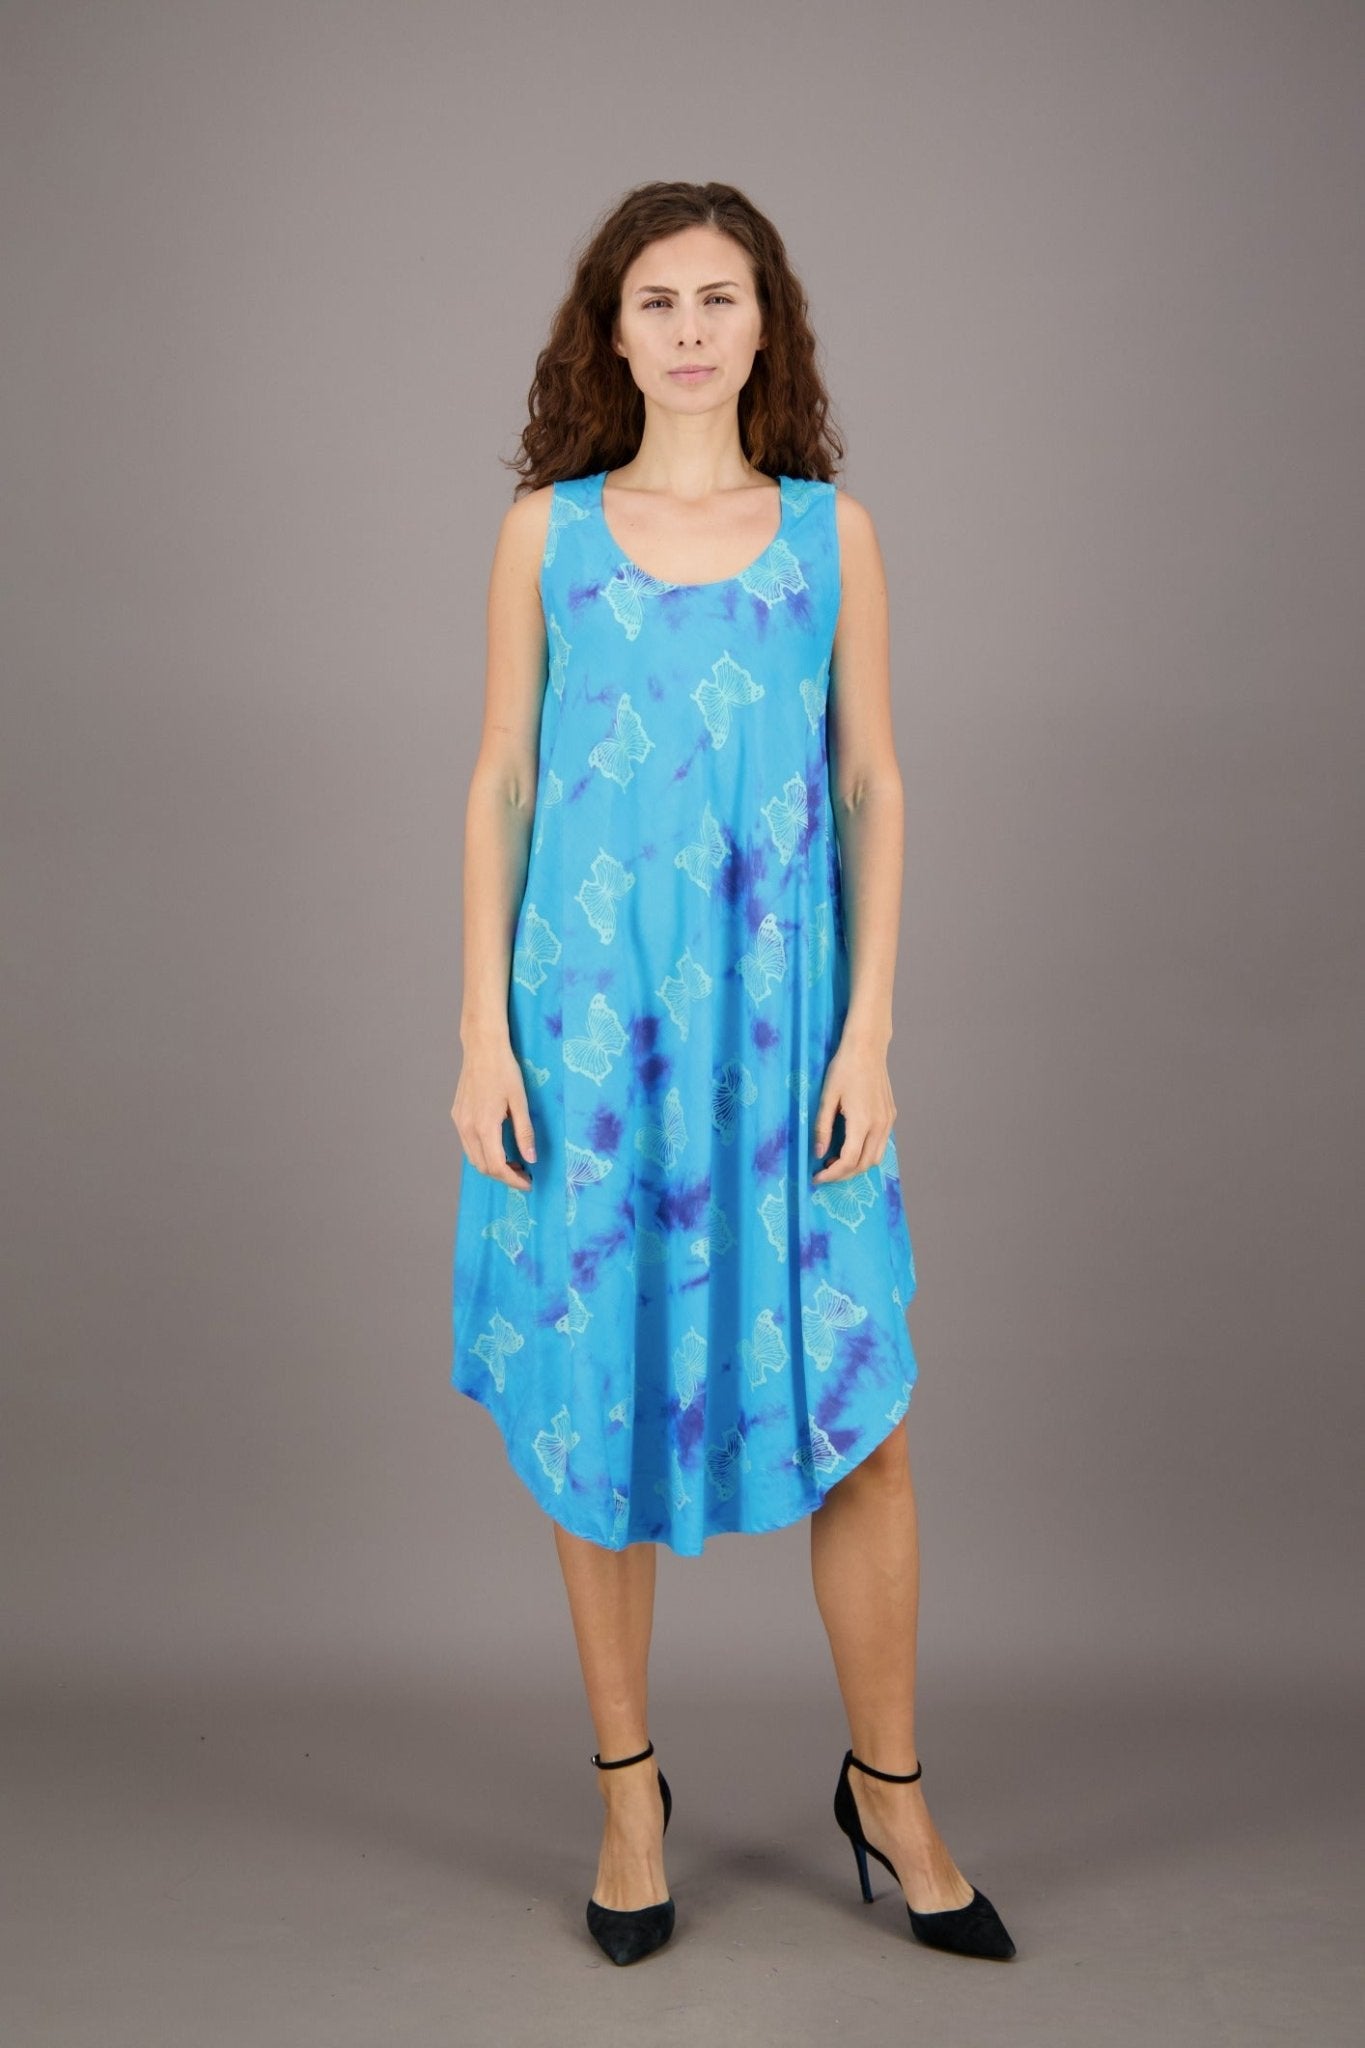 Butterfly Print Tie Dye Resort Dress 17143 - Advance Apparels Inc